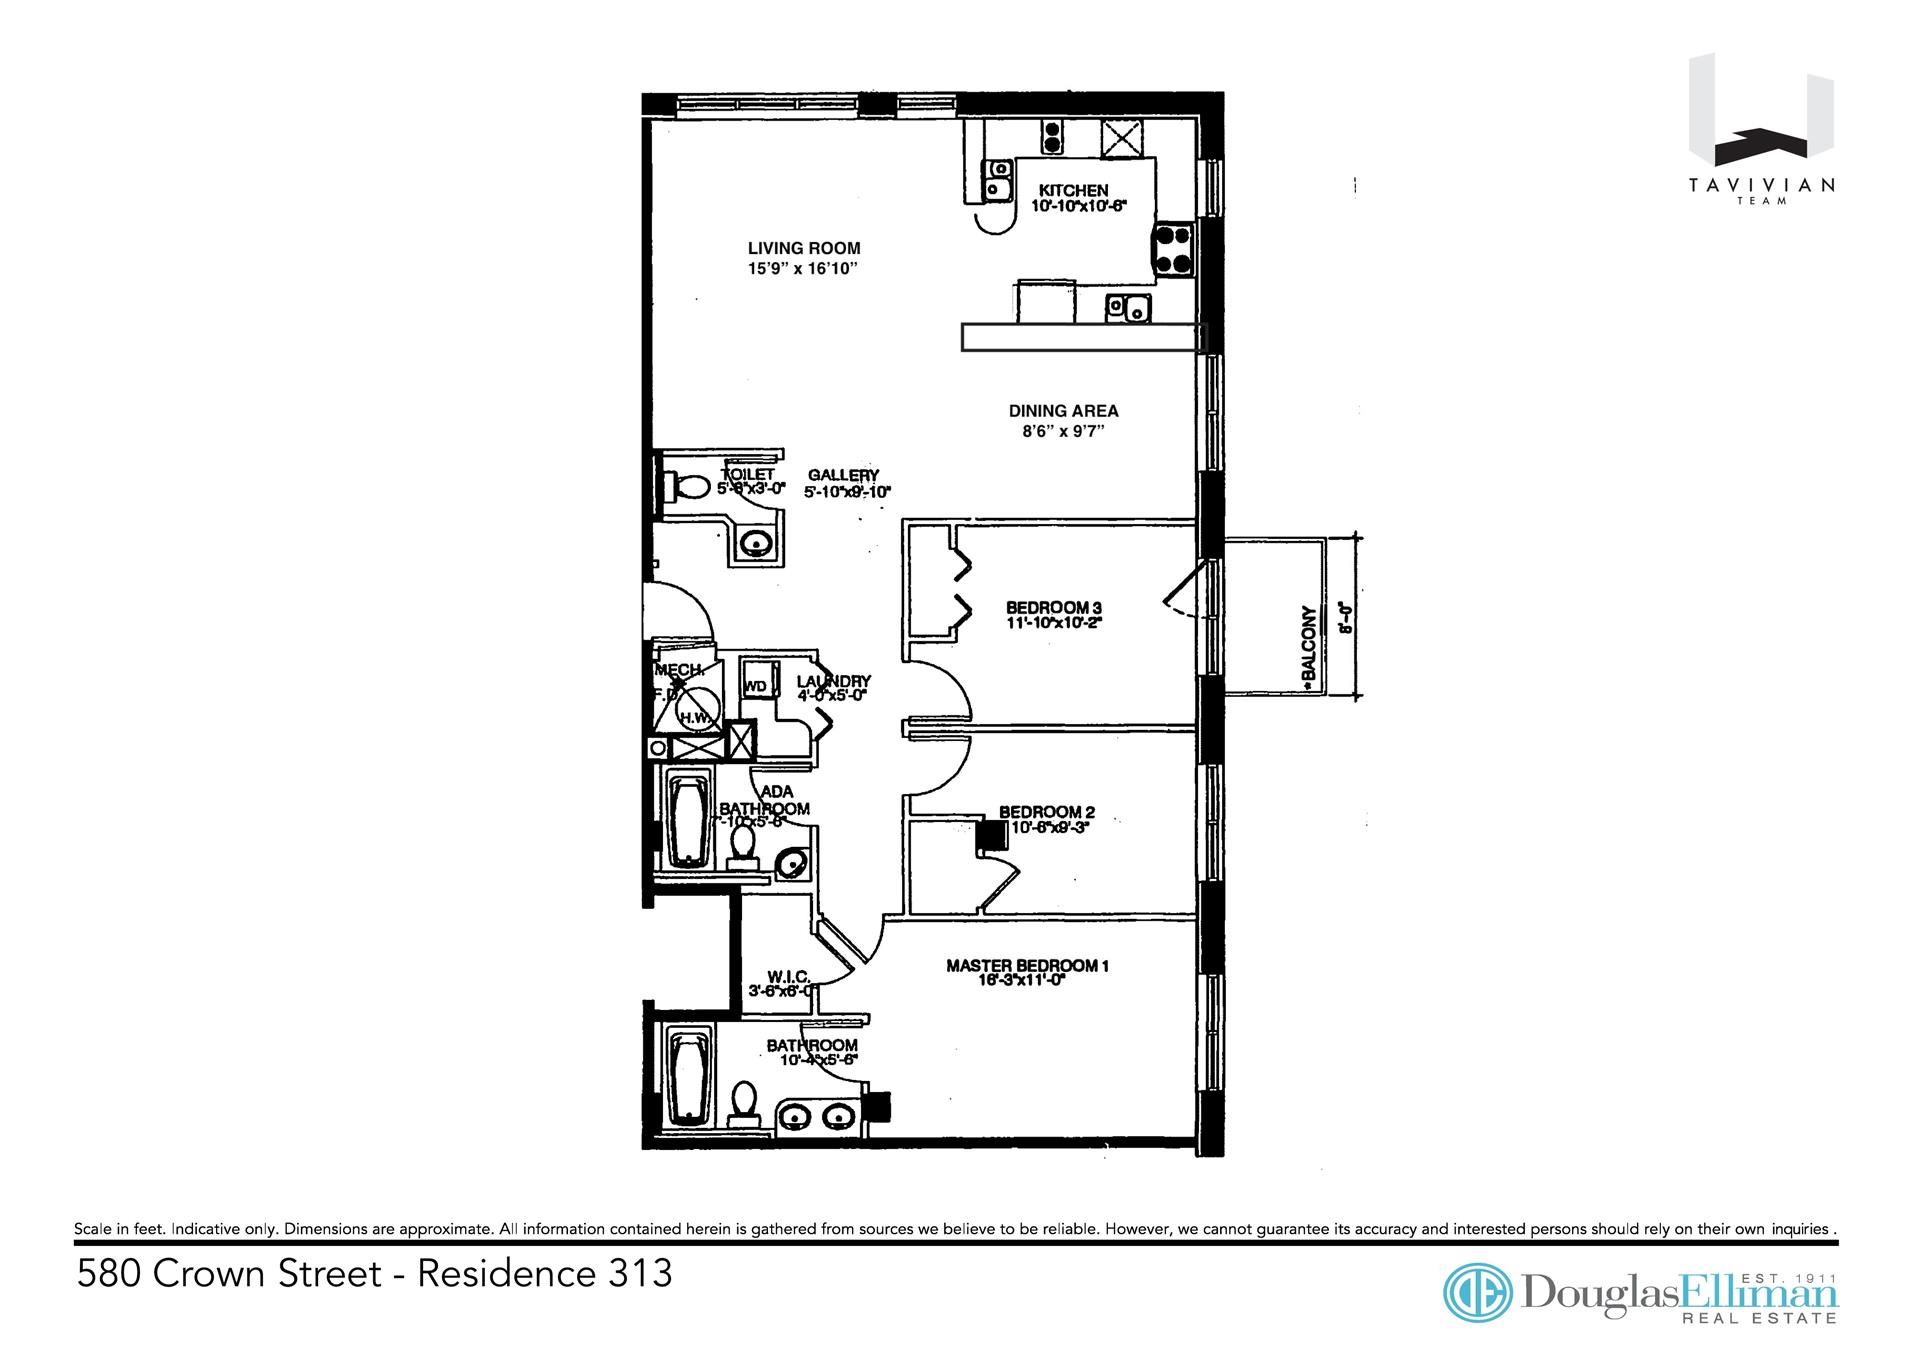 Floorplan for 580 Crown Street, 313